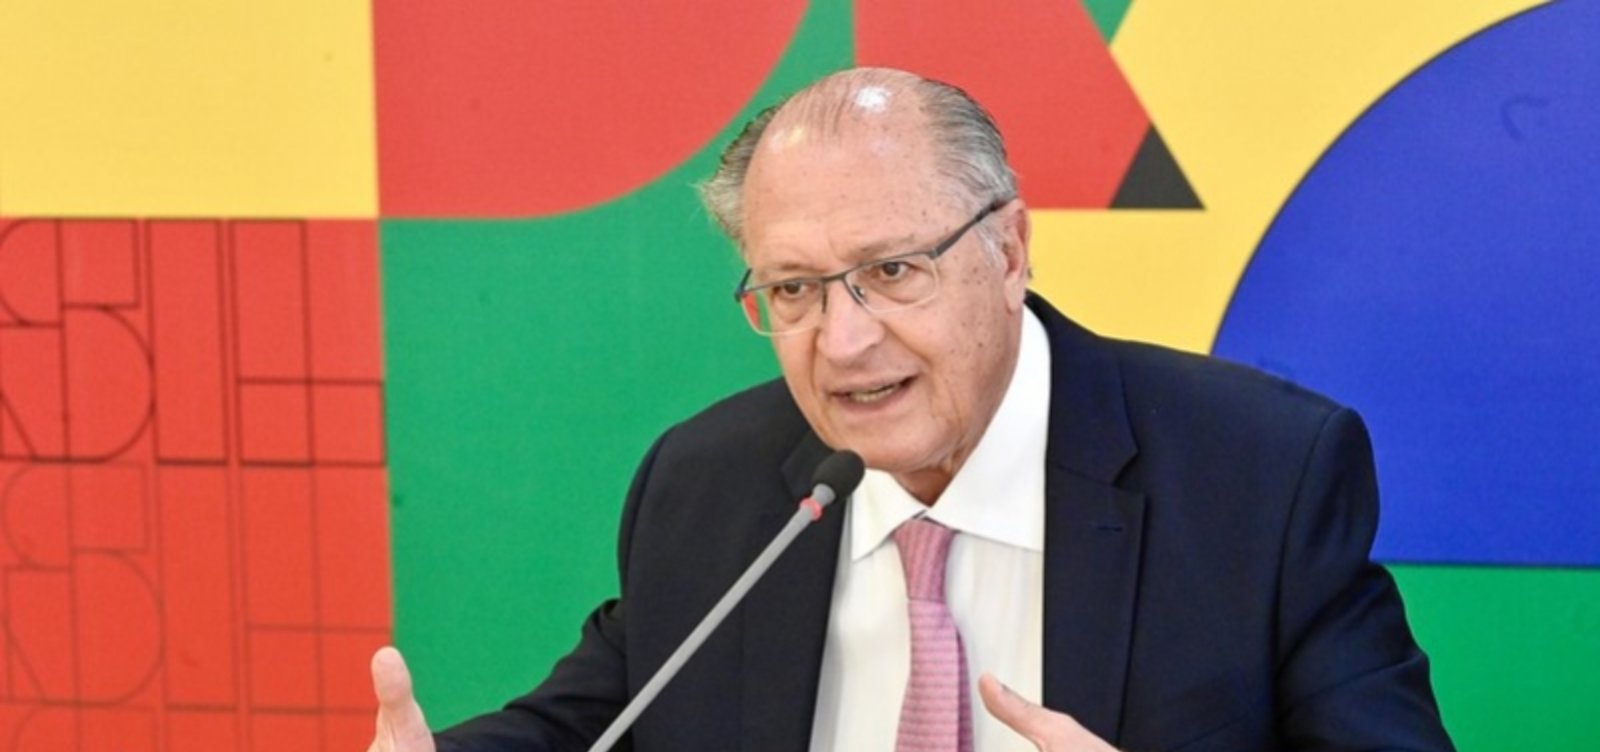 Alckmin  afirma que Brasil ficou 7 anos sem debater o fortalecimento da indústria nacional